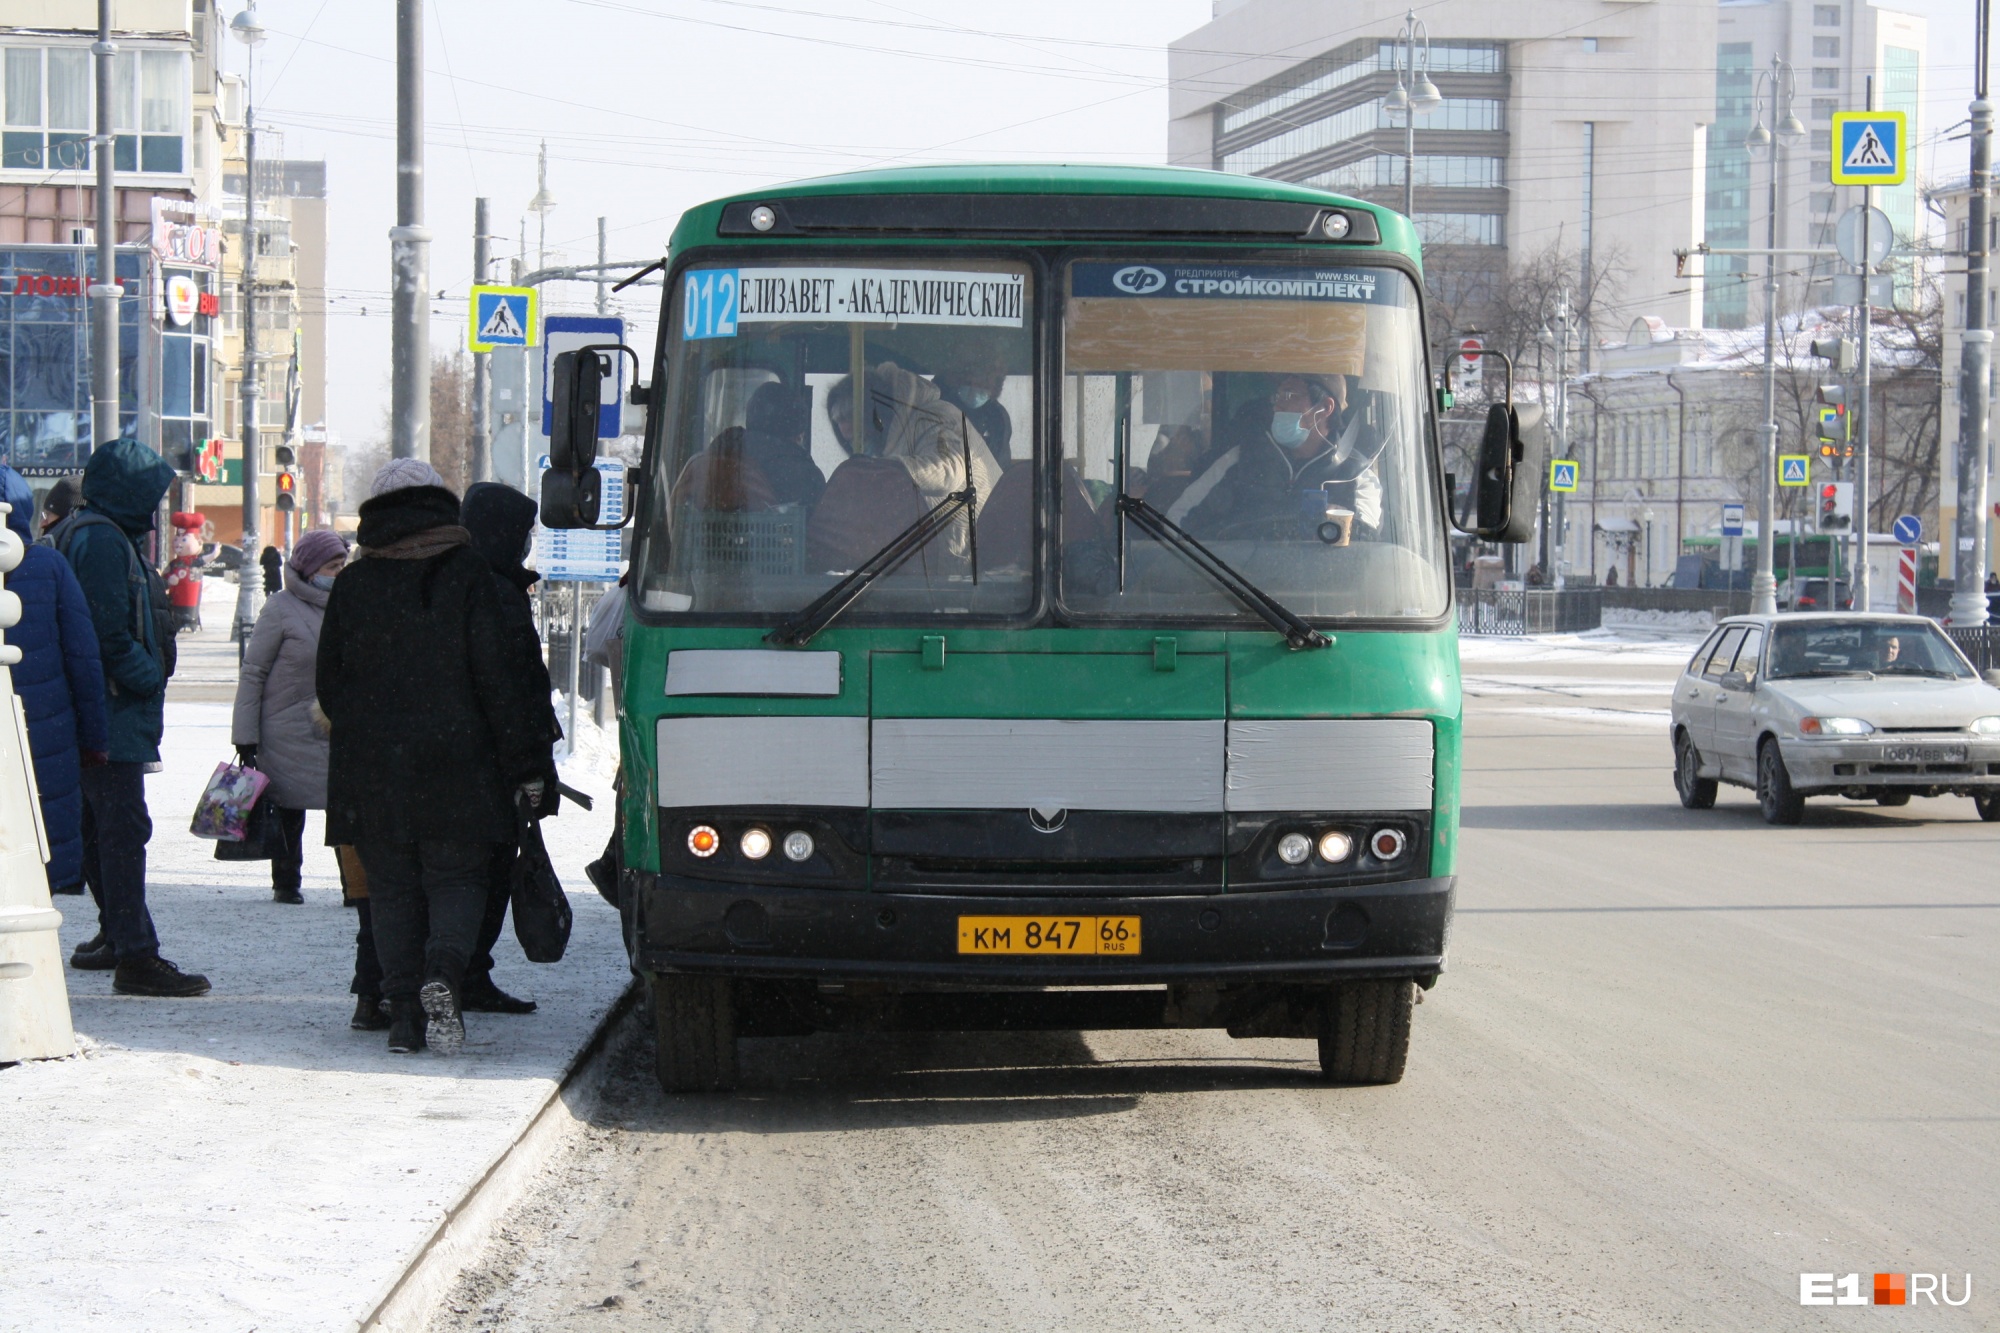 Придется терпеть давки в автобусах: перевозчикам Екатеринбурга по-прежнему не хватает водителей